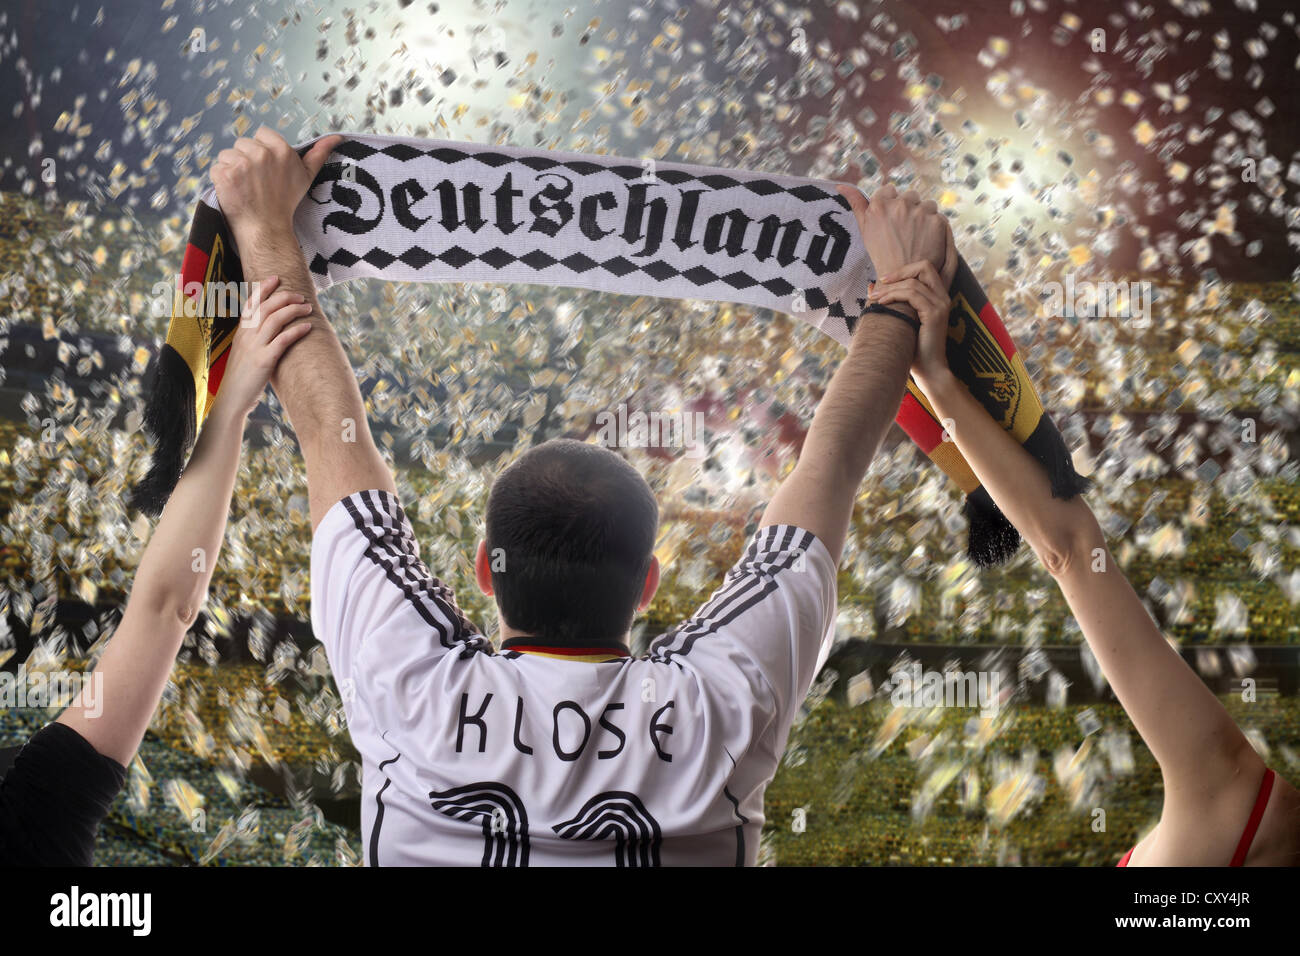 Fußball-Fan hält einen deutschen Fans Schal, gesehen von hinten mit Konfetti in einem Fußballstadion Stockfoto